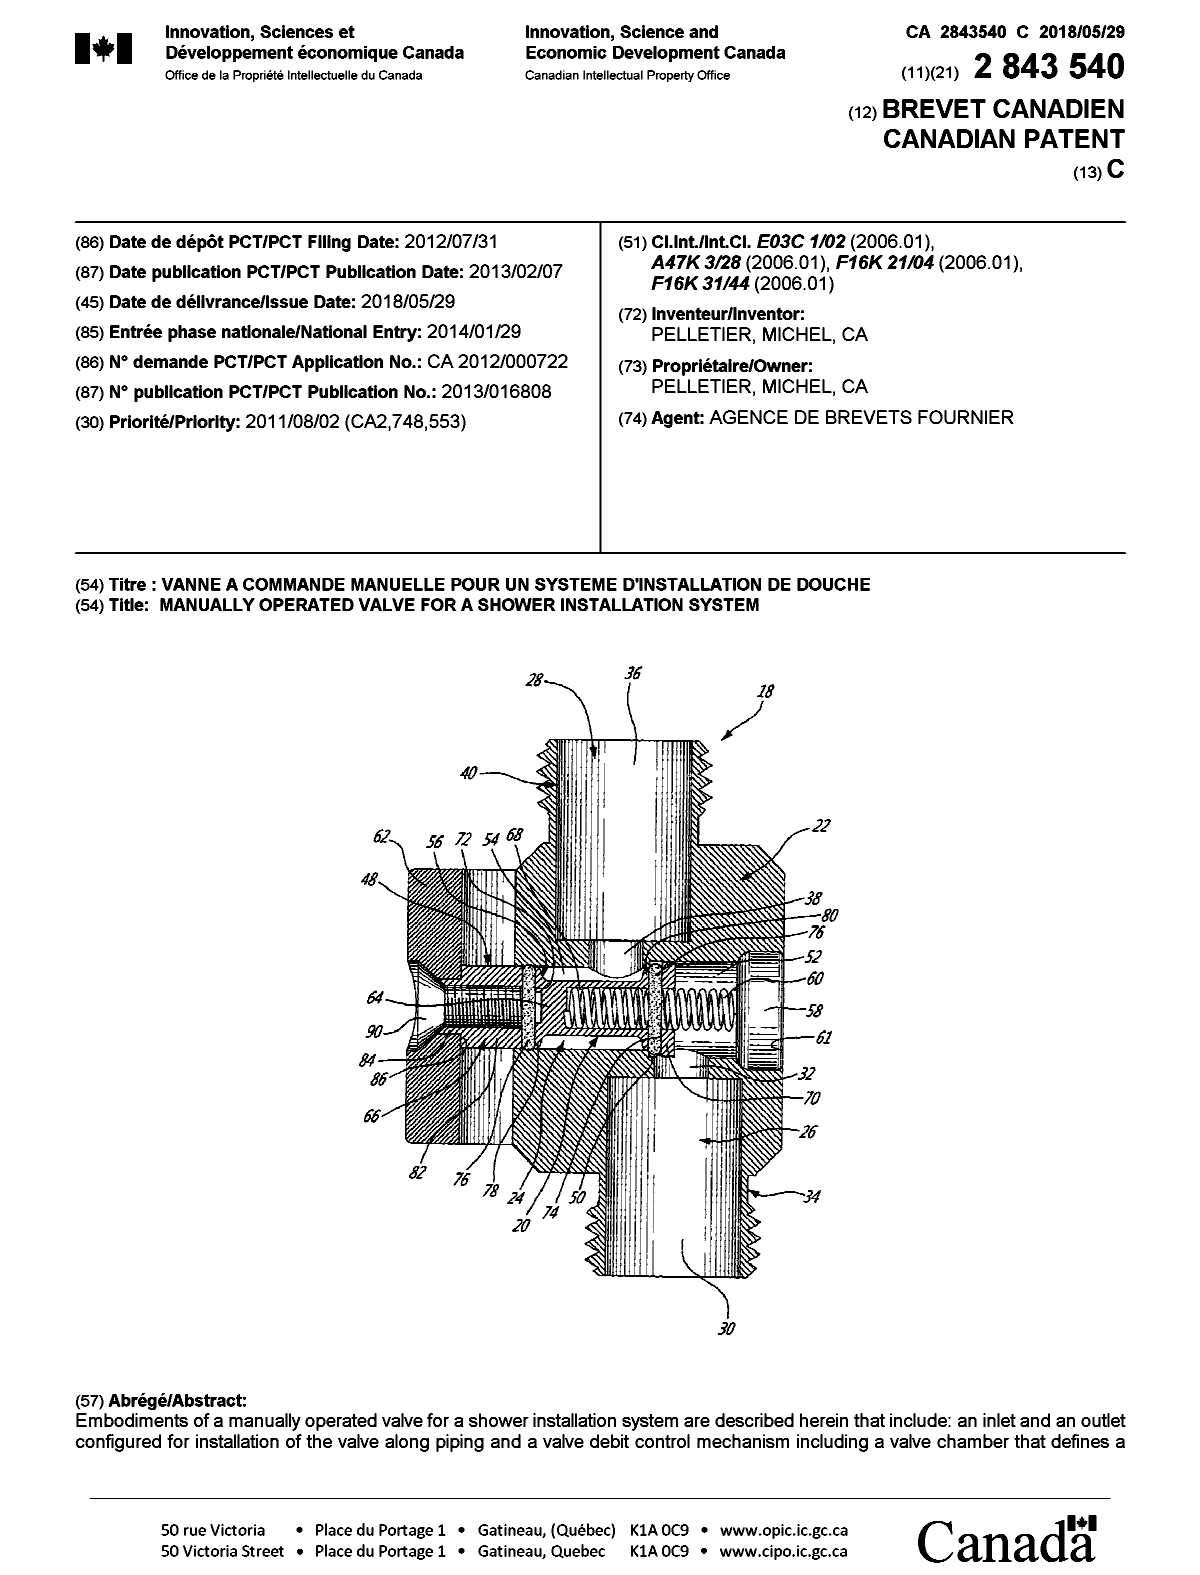 Document de brevet canadien 2843540. Page couverture 20180502. Image 1 de 2